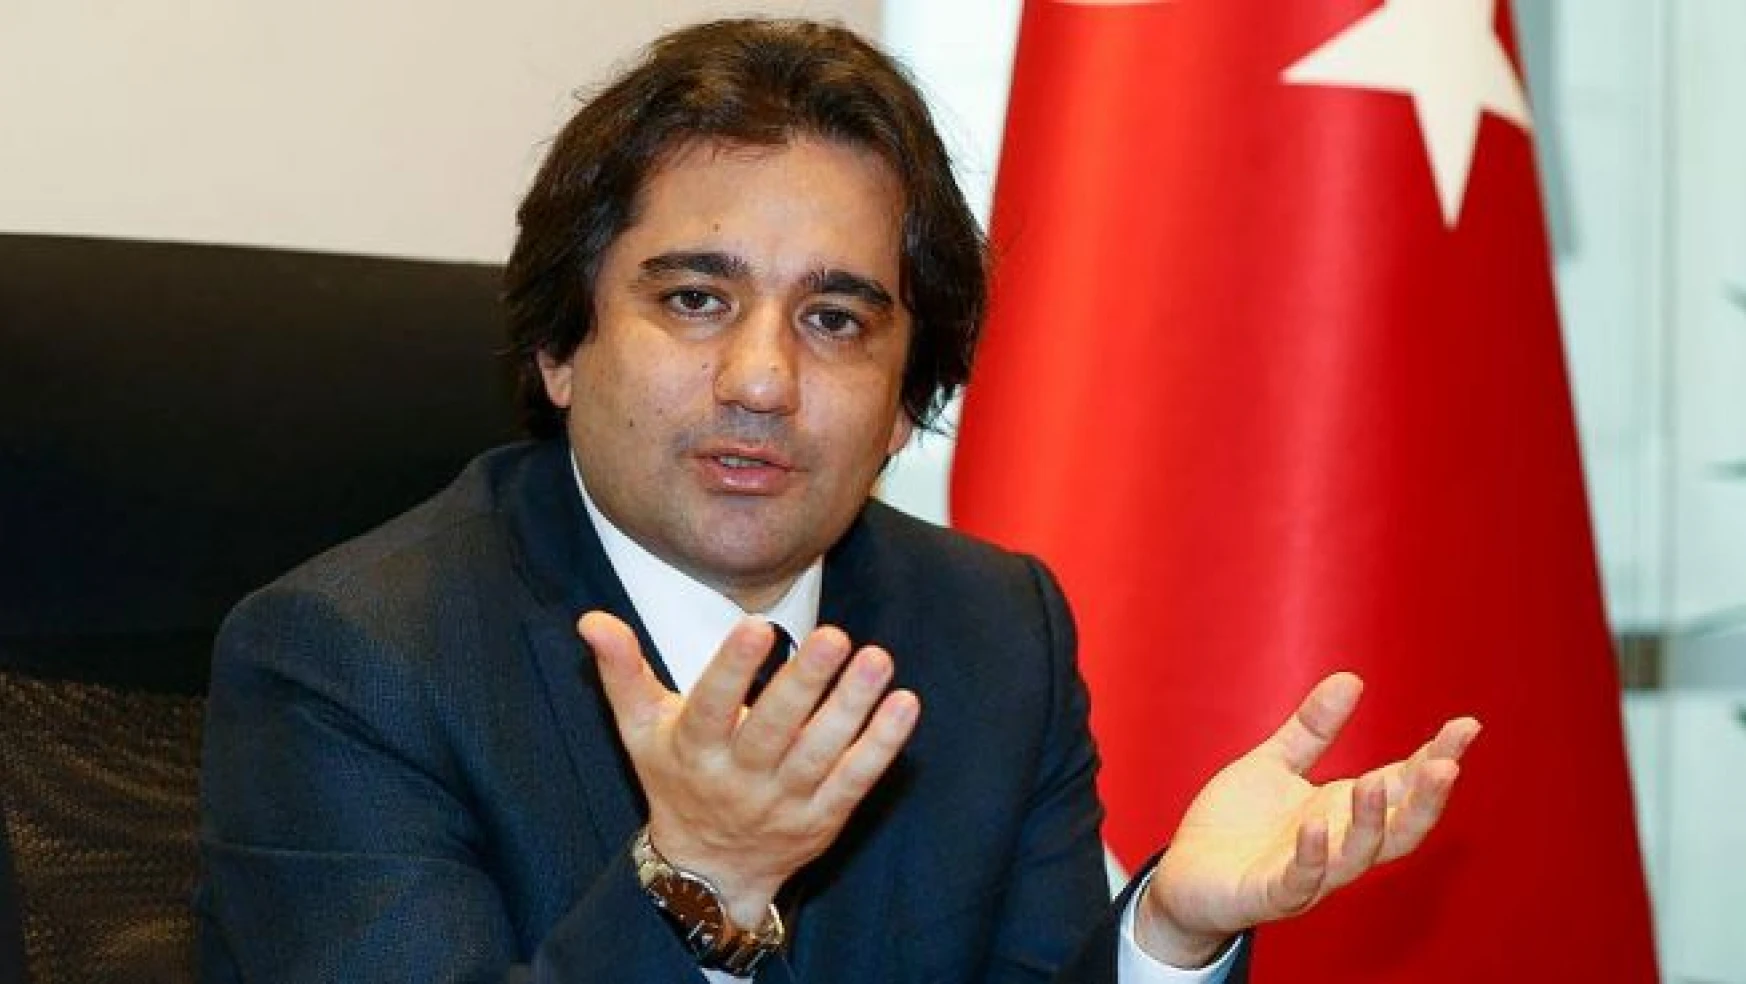 'Türkiye'nin yeni başlangıçlara hem hakkı hem ihtiyacı vardır'